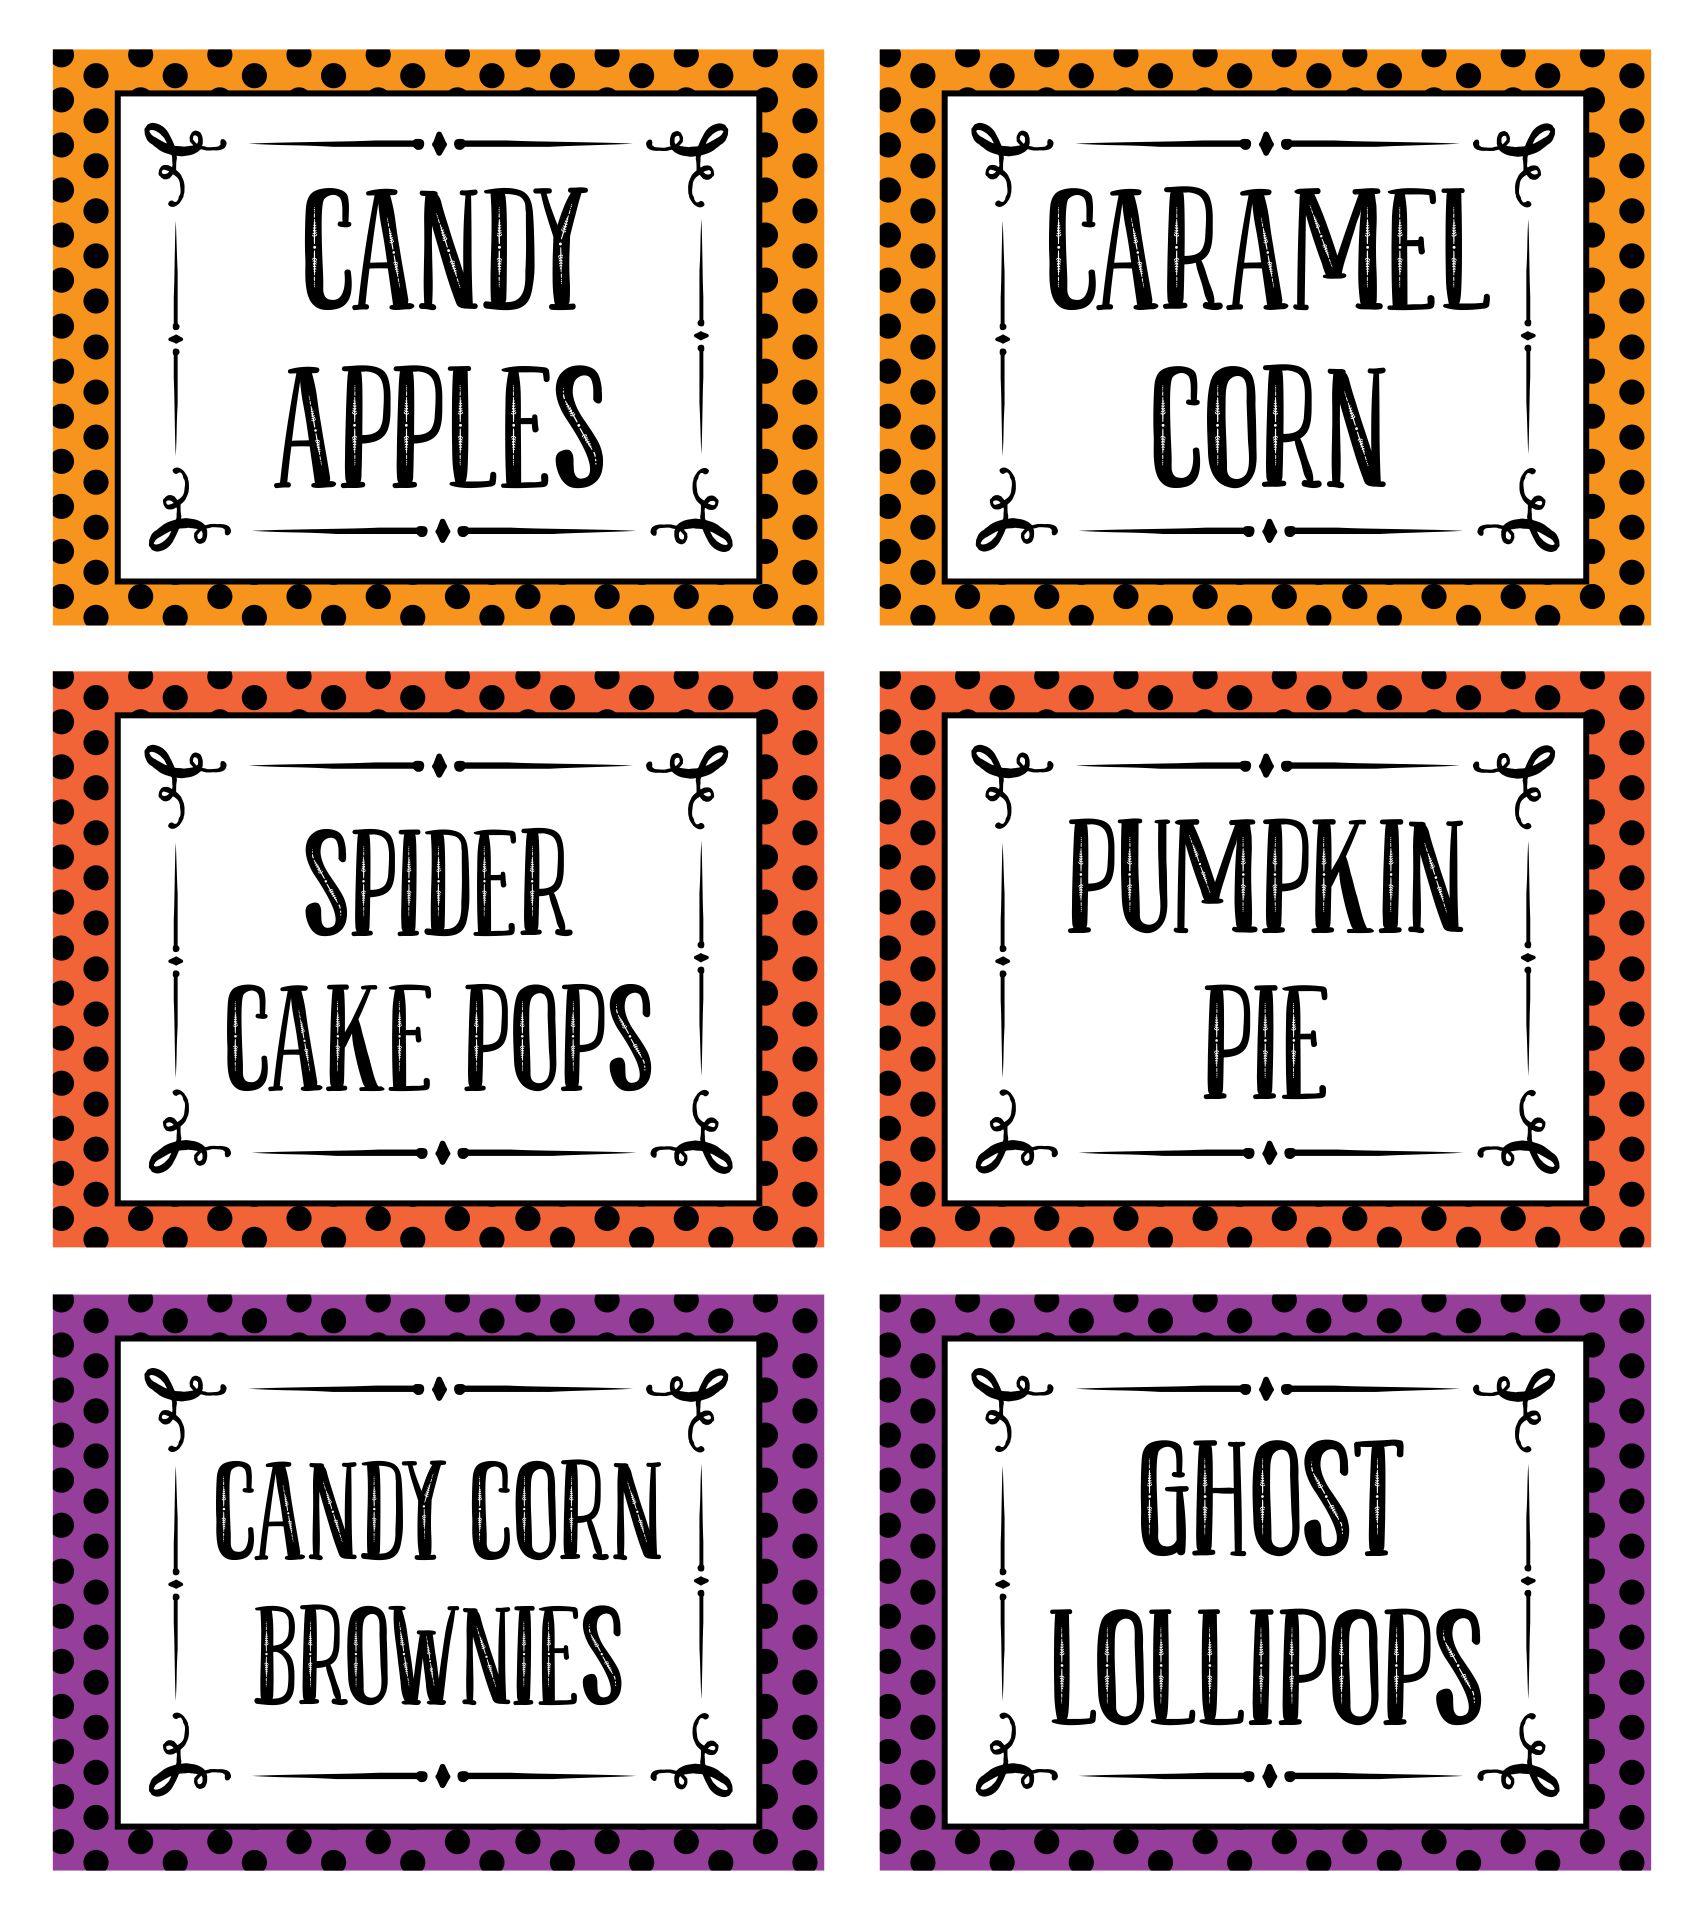 Free Printable Halloween Food Labels